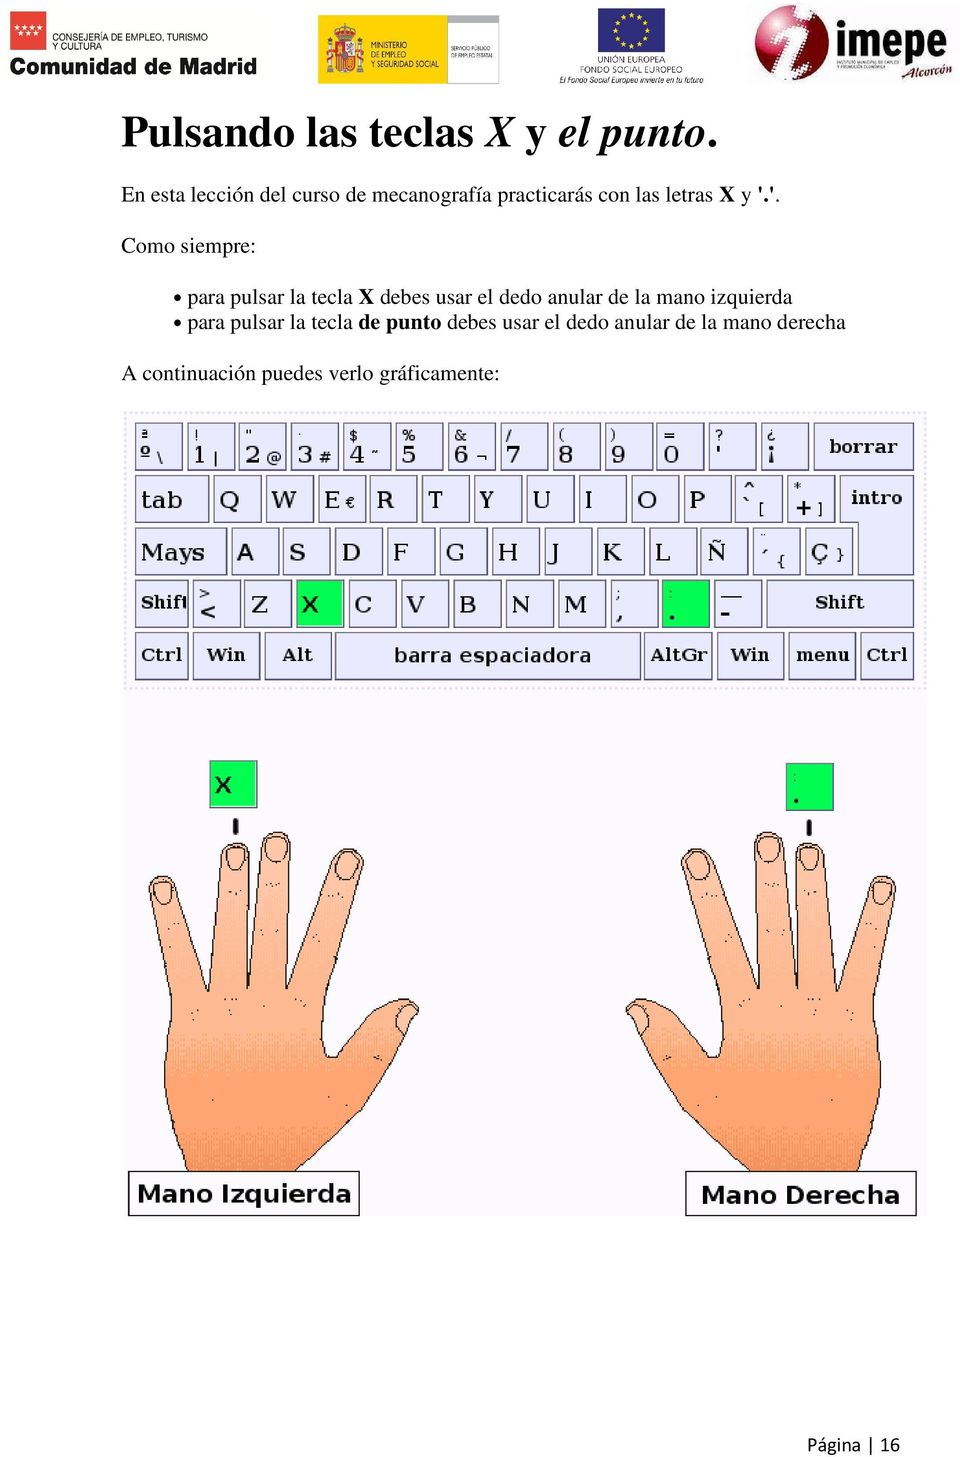 '. Como siempre: para pulsar la tecla X debes usar el dedo anular de la mano